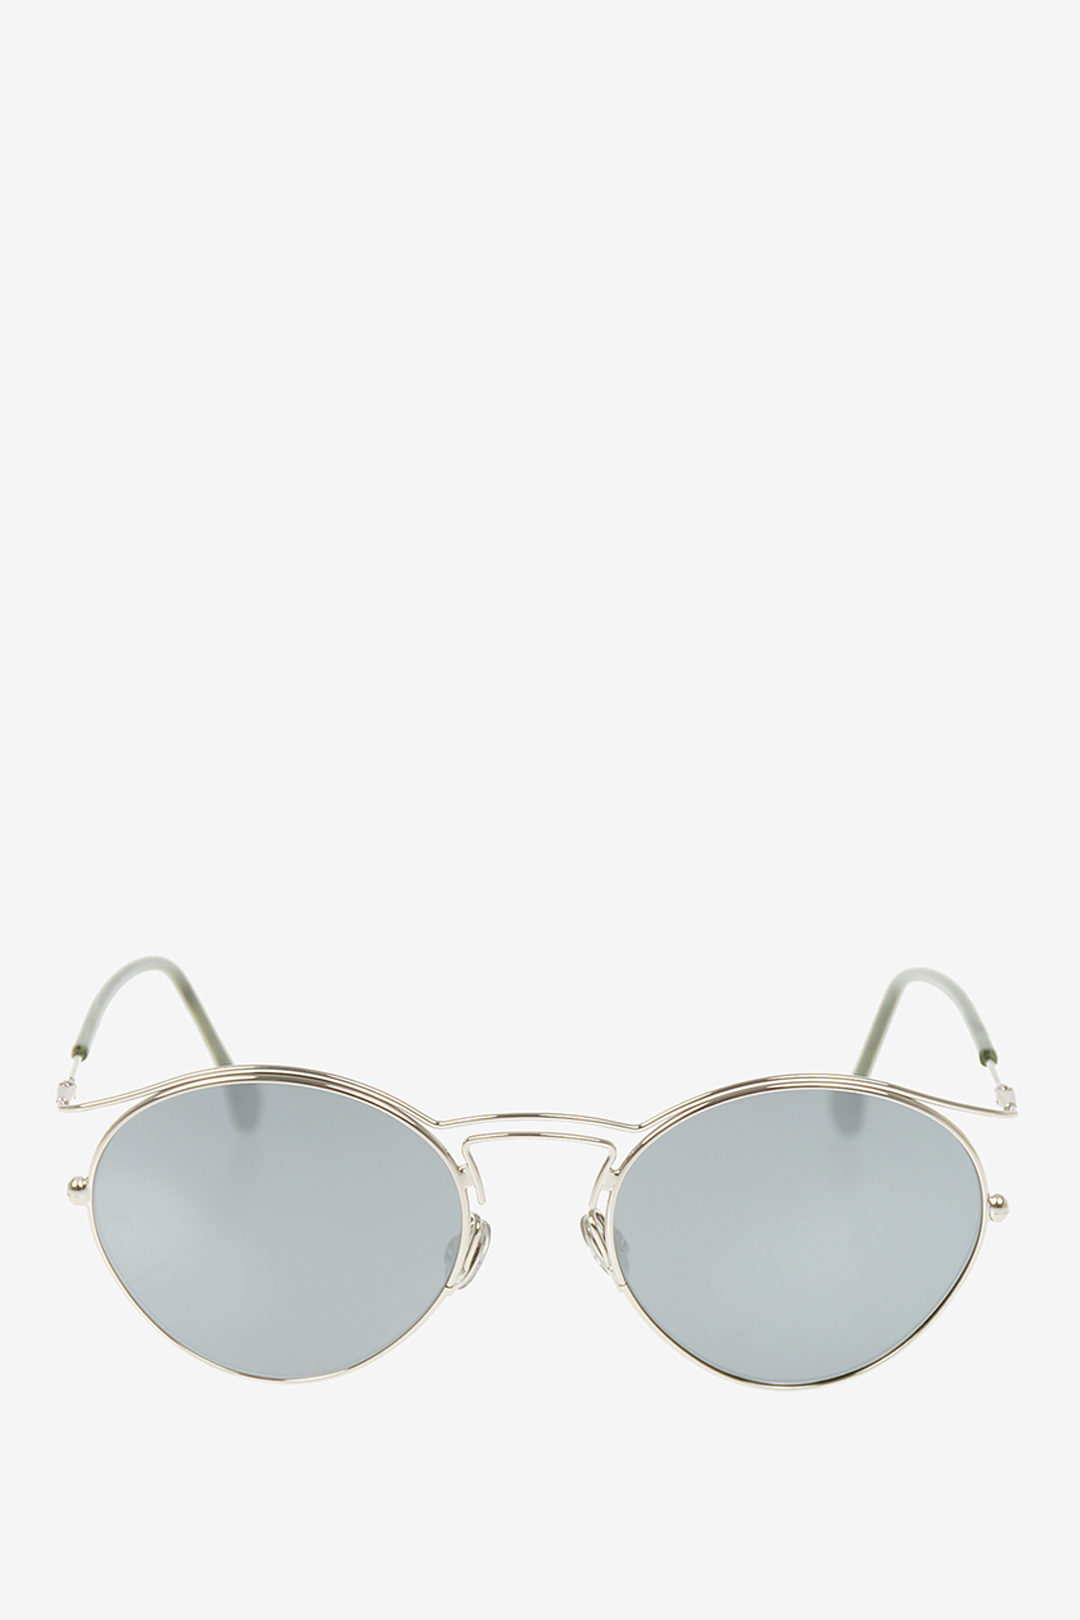 Buy Dior Origins 1 Sunglasses 53 mm Online Algeria  Ubuy